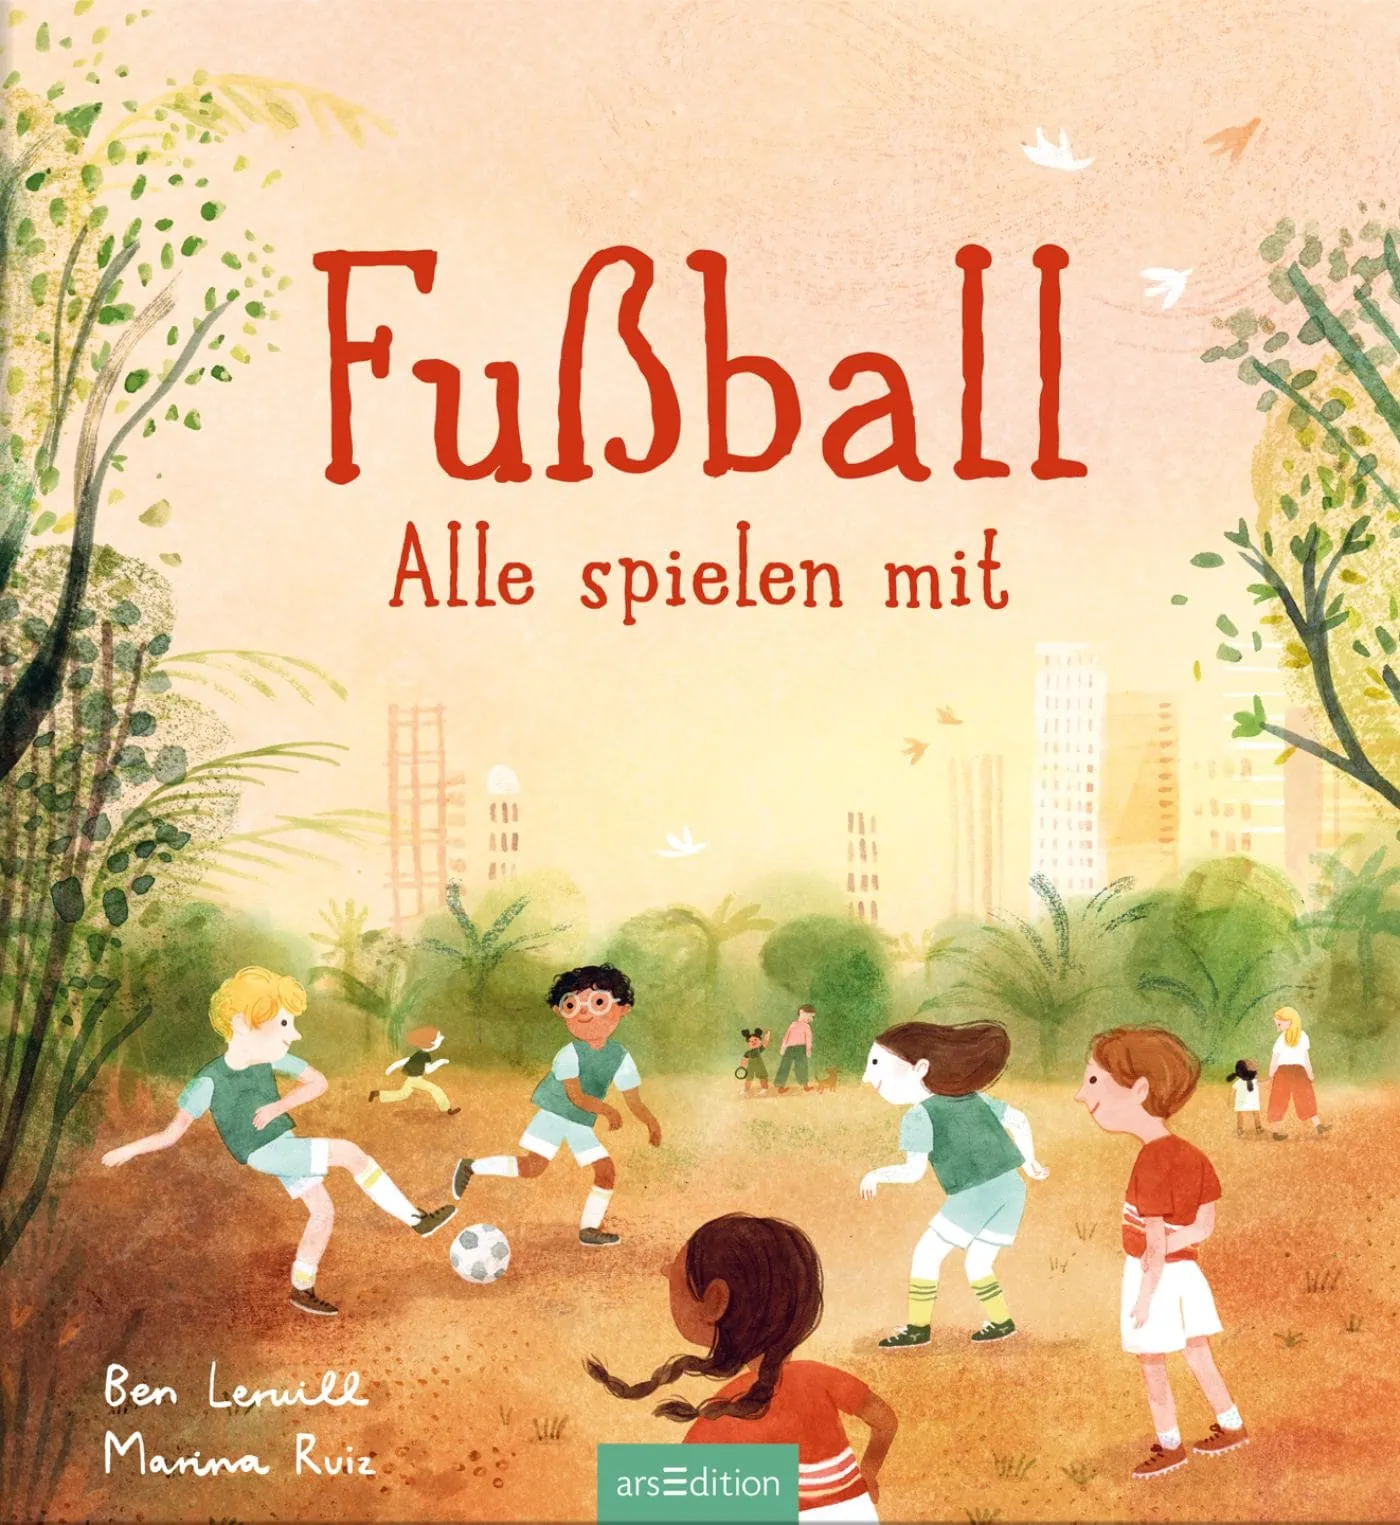 Kinderbuch-Tipps Rund Um Sport: Fußball – Alle Spielen Mit! // Himbeer